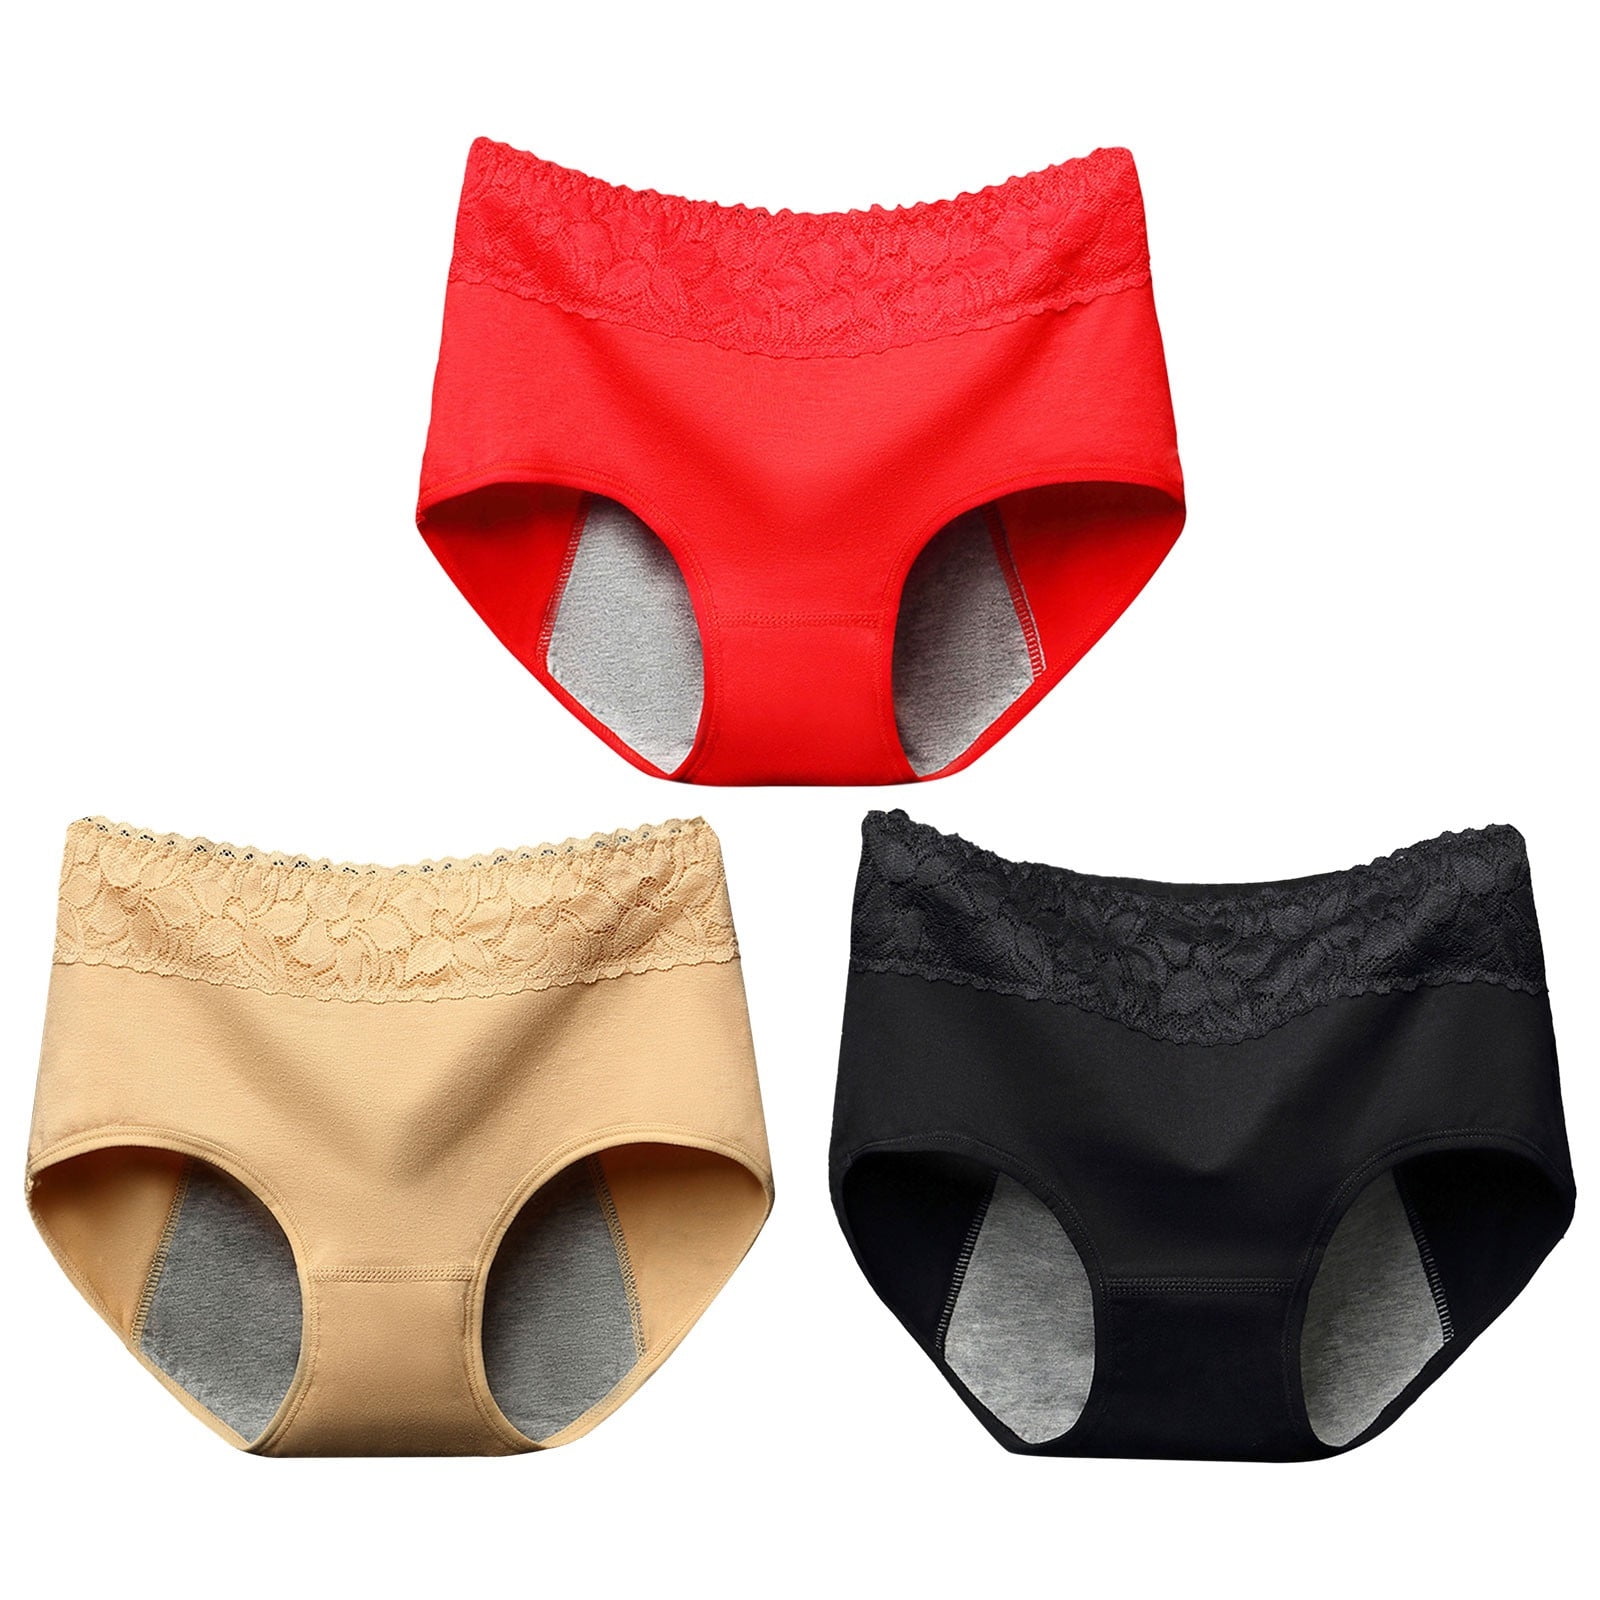 Jockey Underwear Women,Cheeky Underwear for Women Lace Panties Soft ...